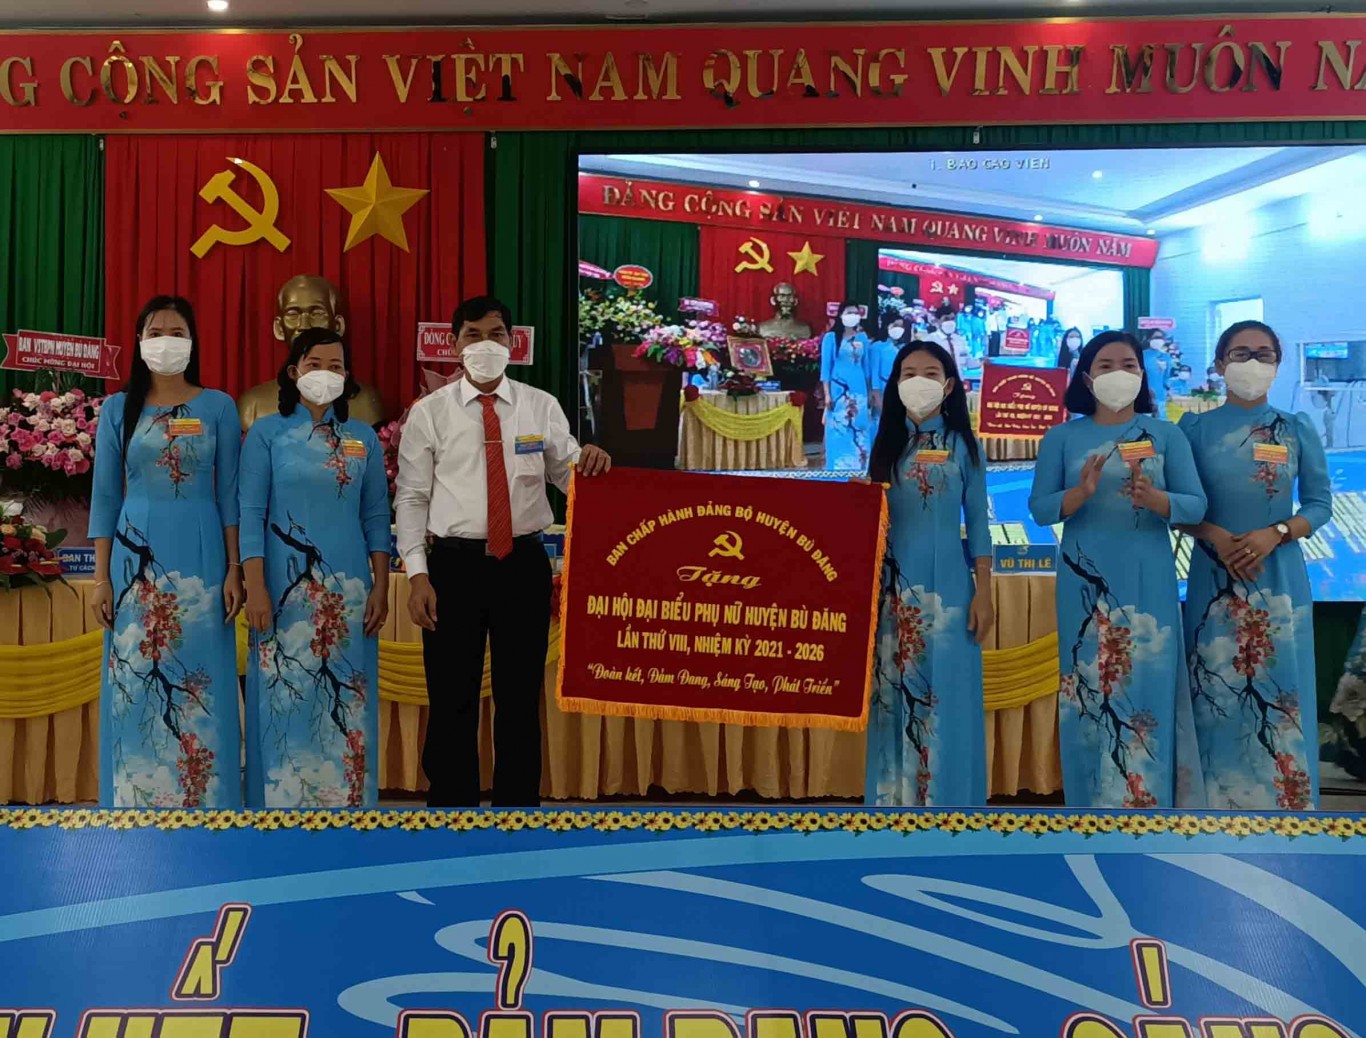 Phó Bí thư thường trực Huyện ủy Nguyễn Tấn Hồng trao bức trướng của Ban chấp hành Đảng bộ huyện Bù Đăng cho đại hội